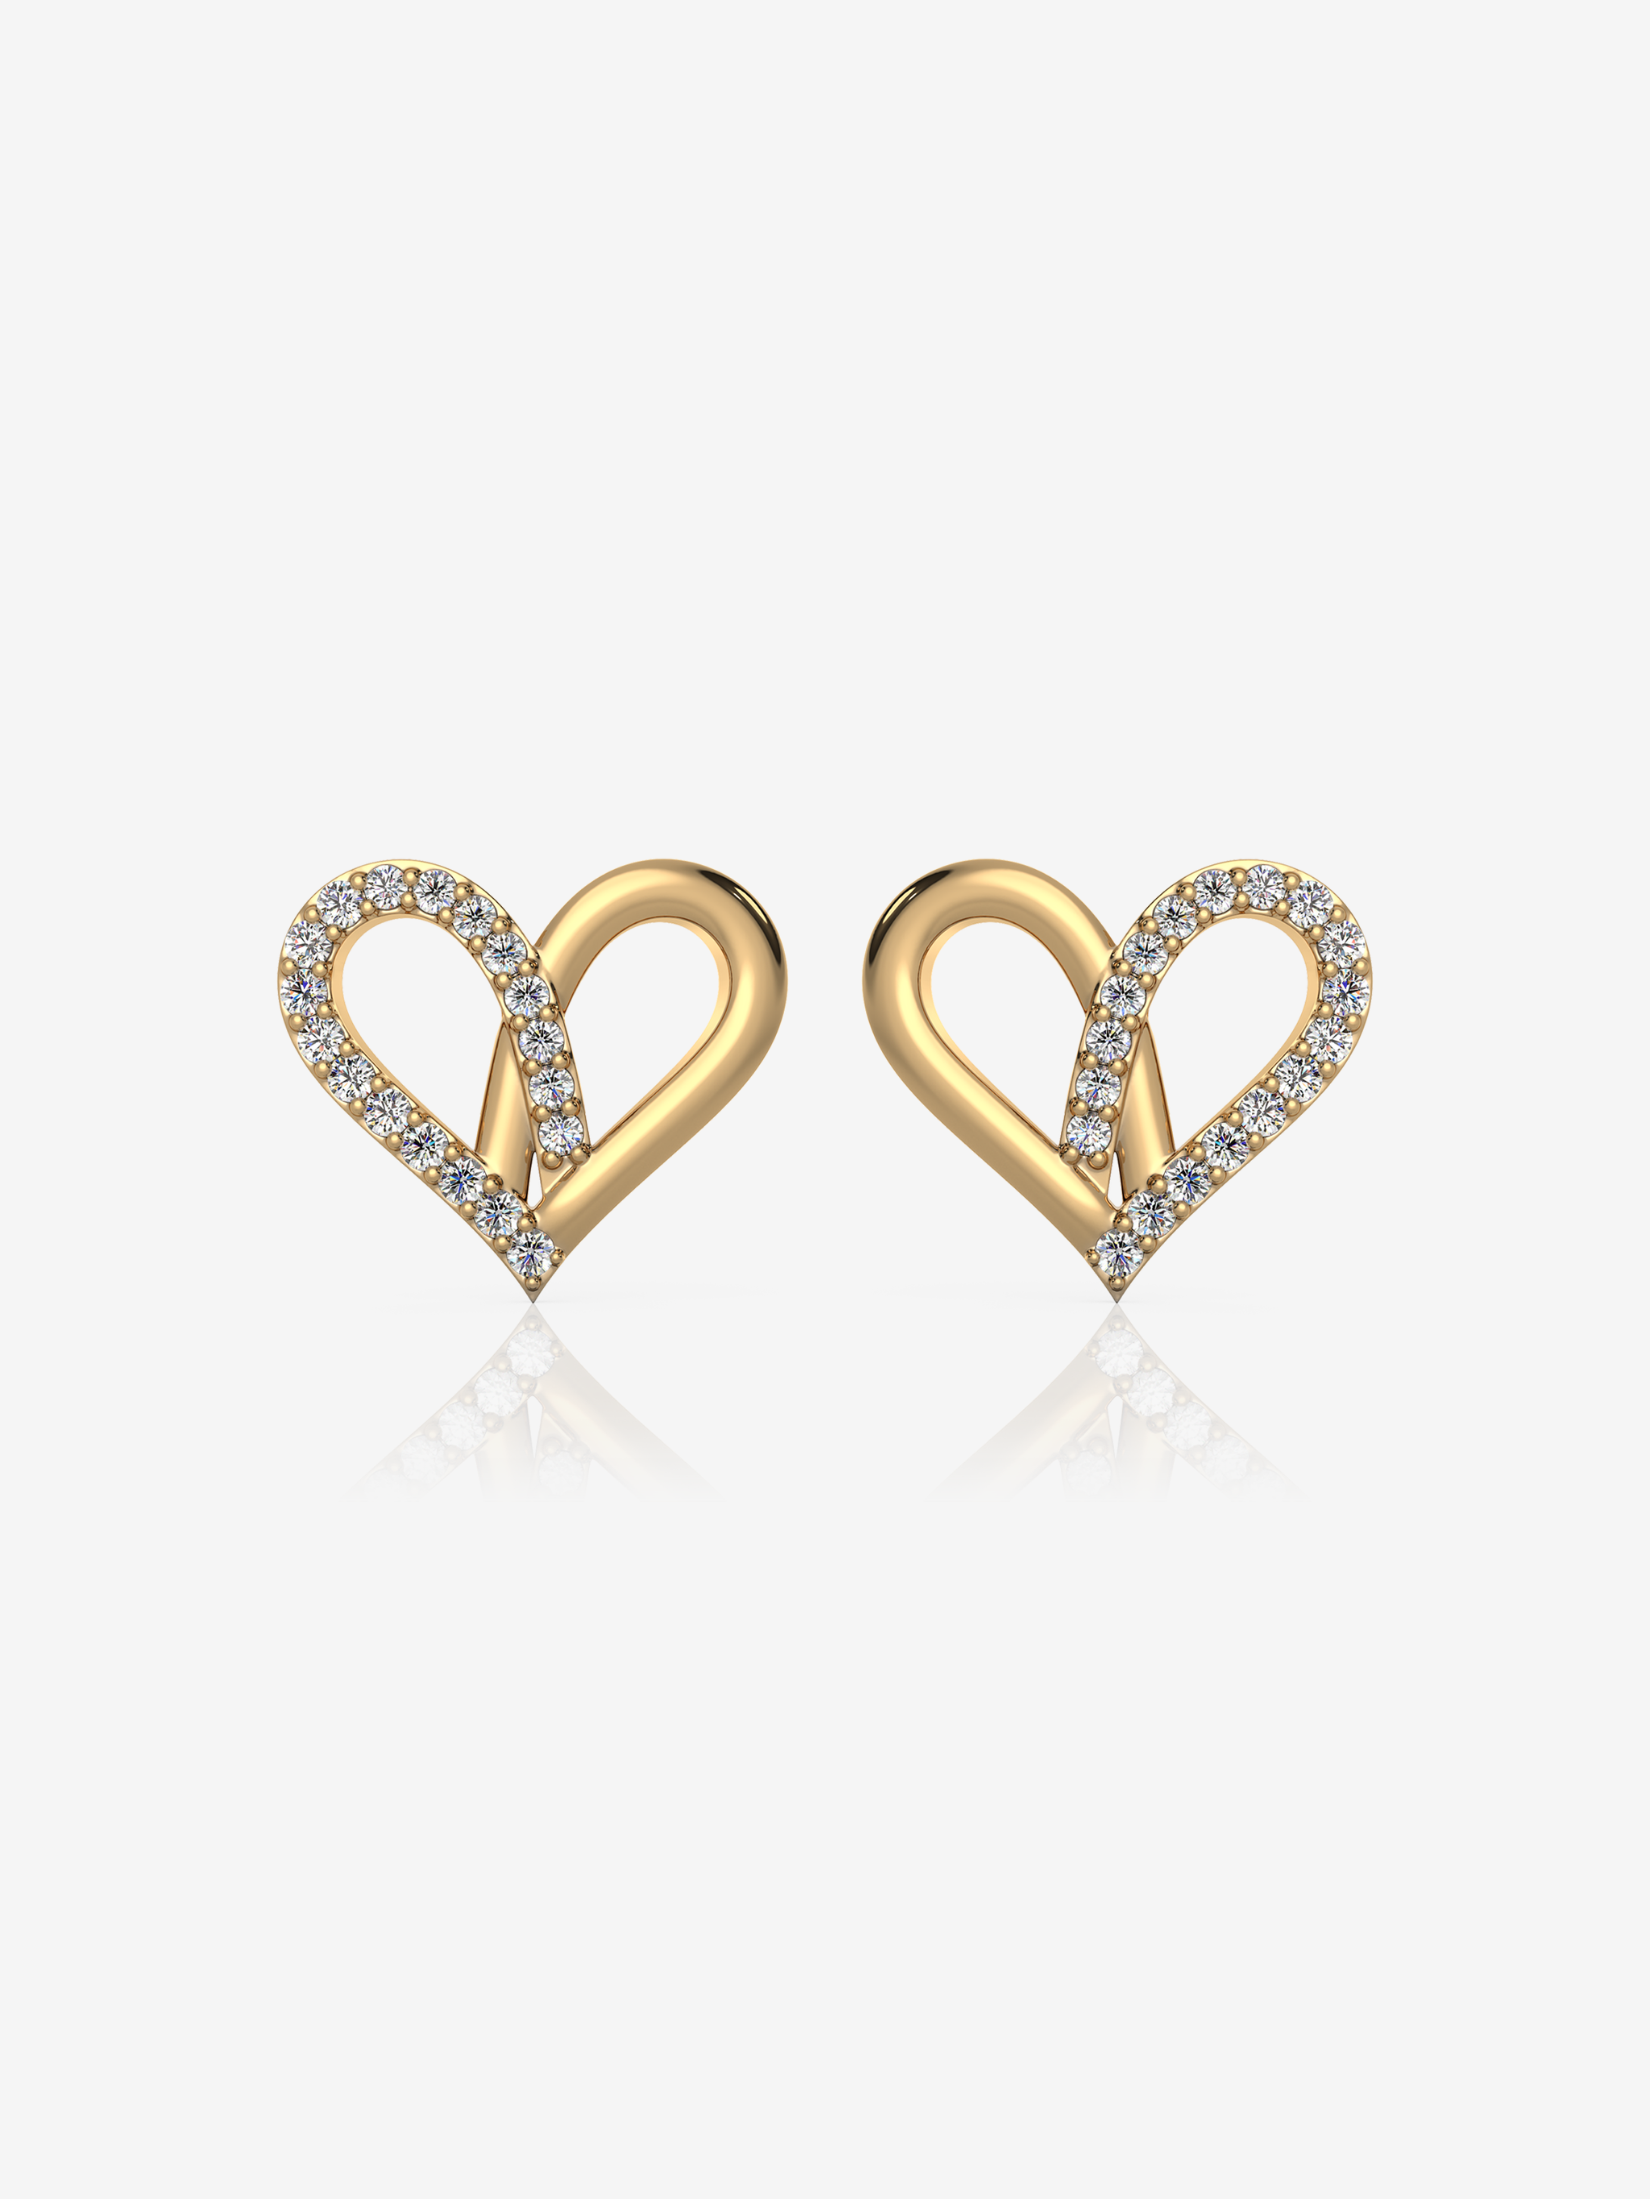 Seek Shine Hali Heart CZ Earrings 18K Gold Stainless Steel